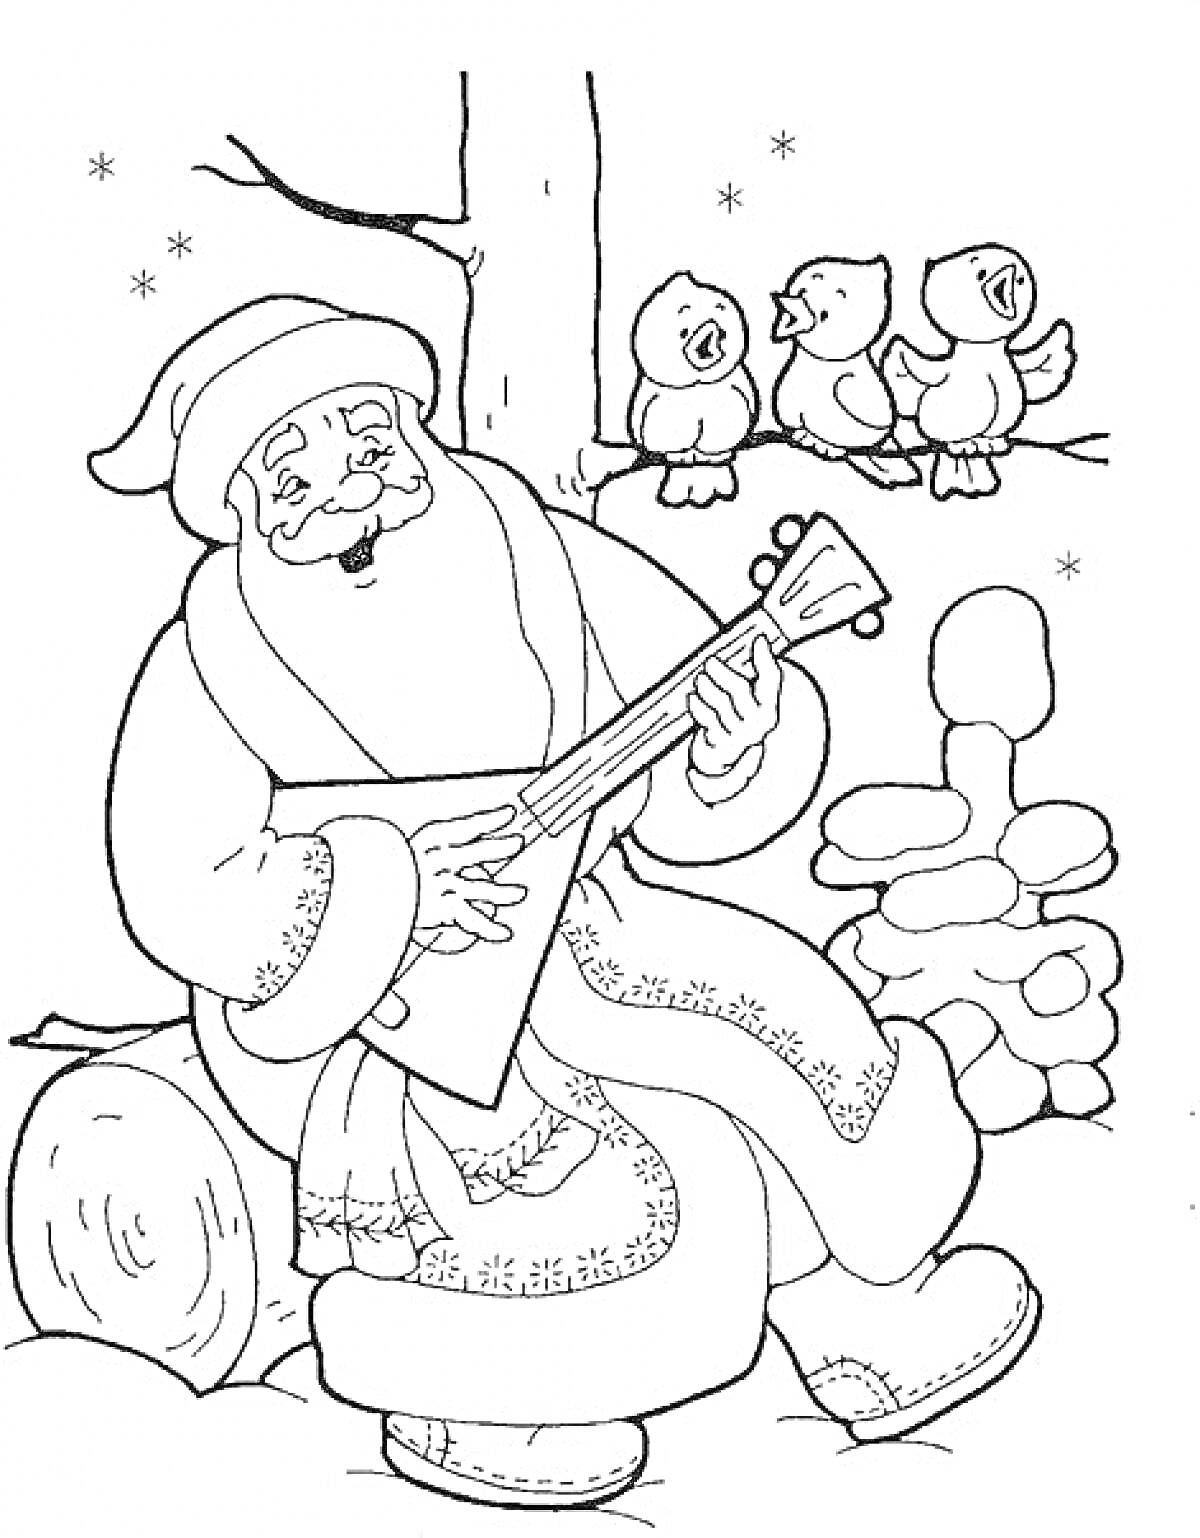 Дед Мороз с музыкальным инструментом, деревом и тремя птичками